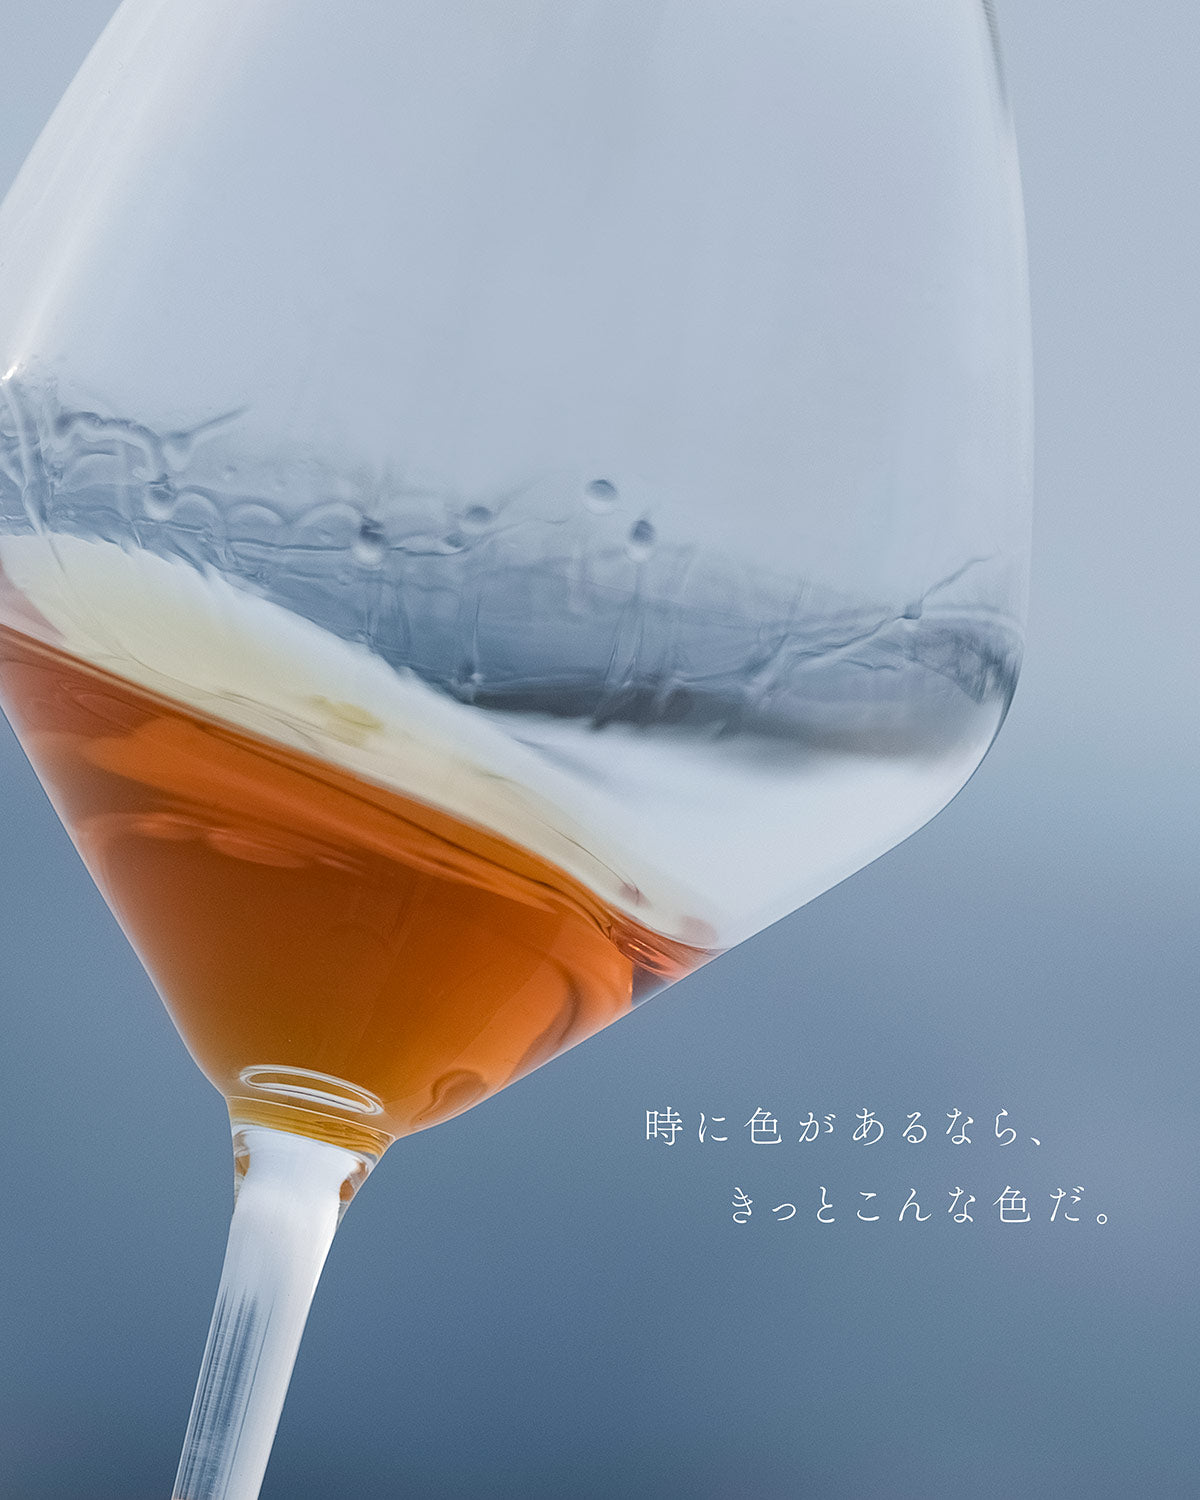 金紋秋田酒造株式会社